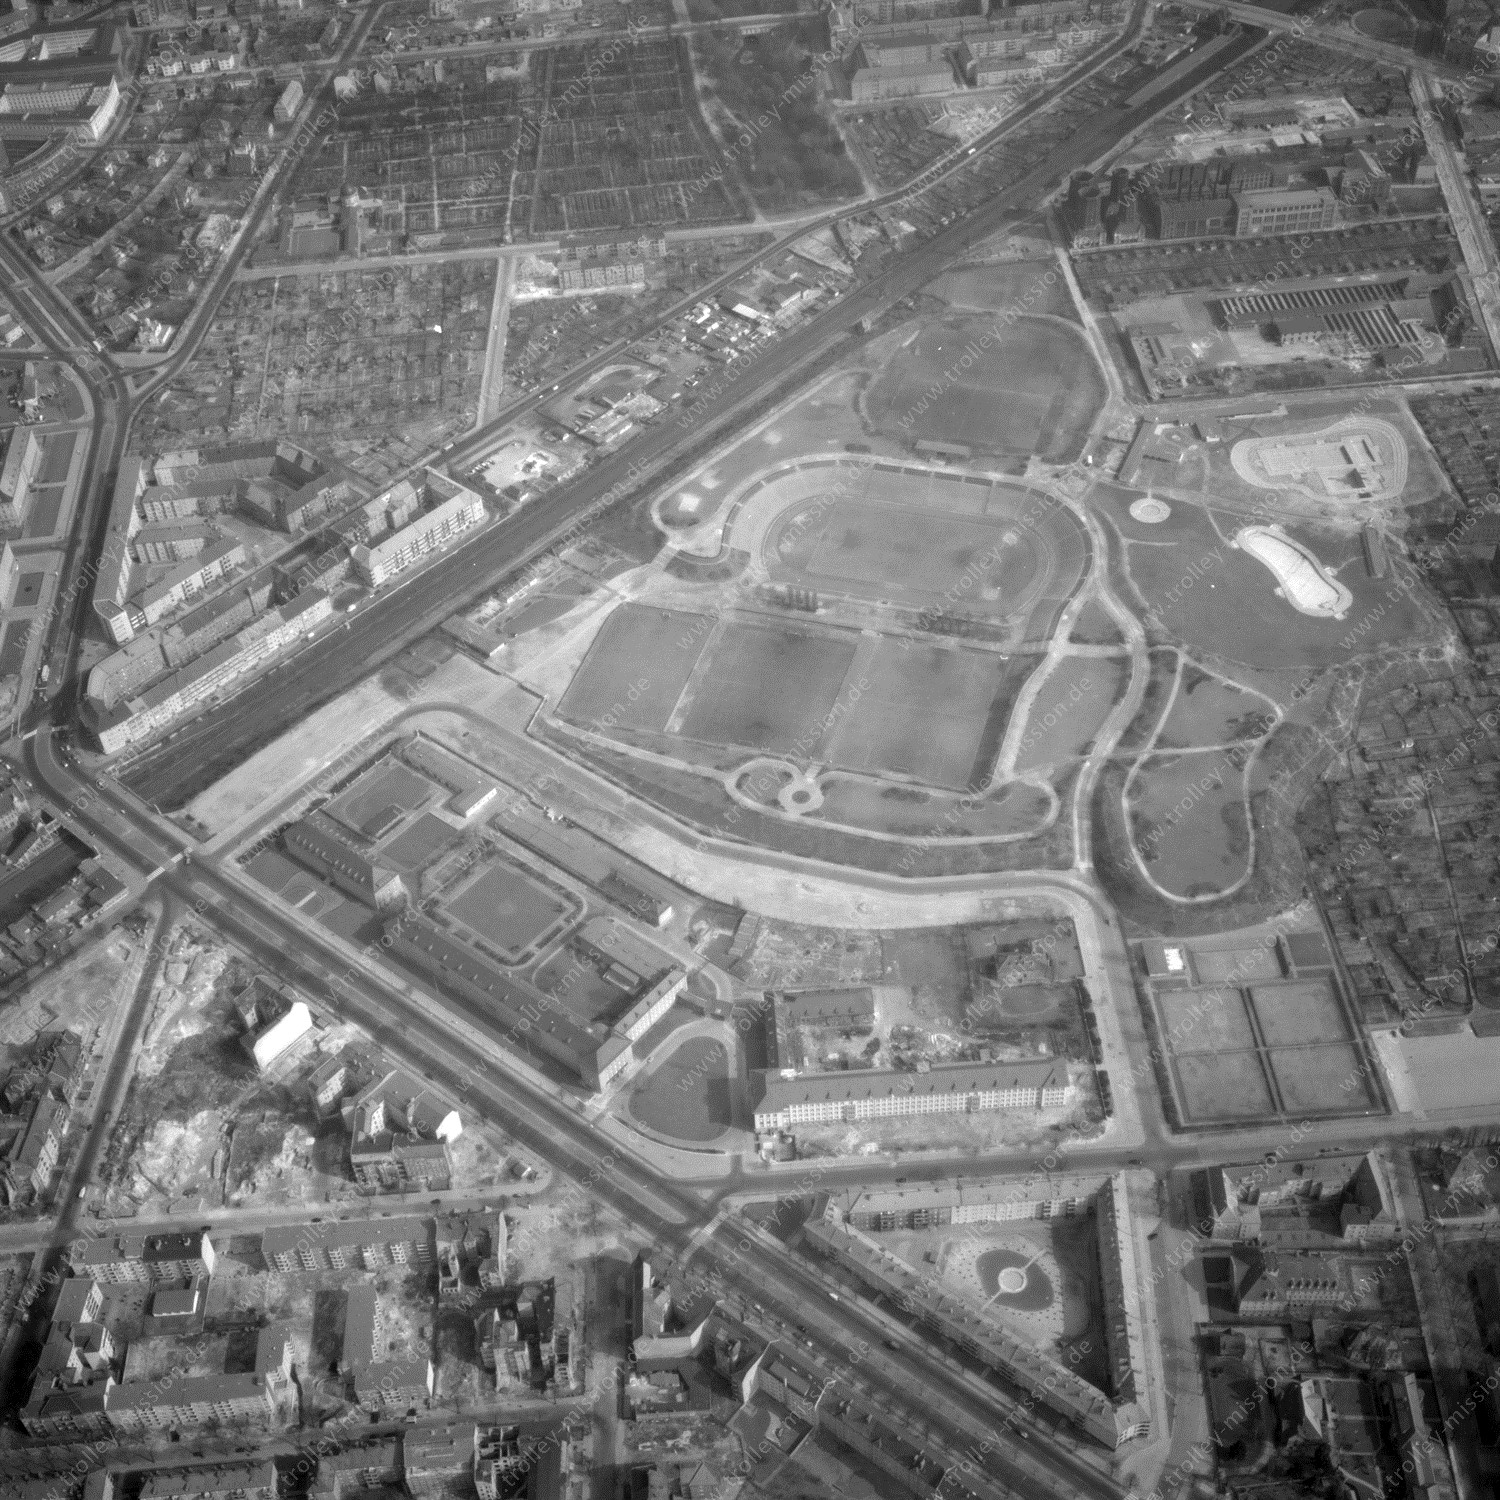 Alte Fotos und Luftbilder von Berlin - Luftbildaufnahme Nr. 03 - Historische Luftaufnahmen von West-Berlin aus dem Jahr 1954 - Flugstrecke Bravo